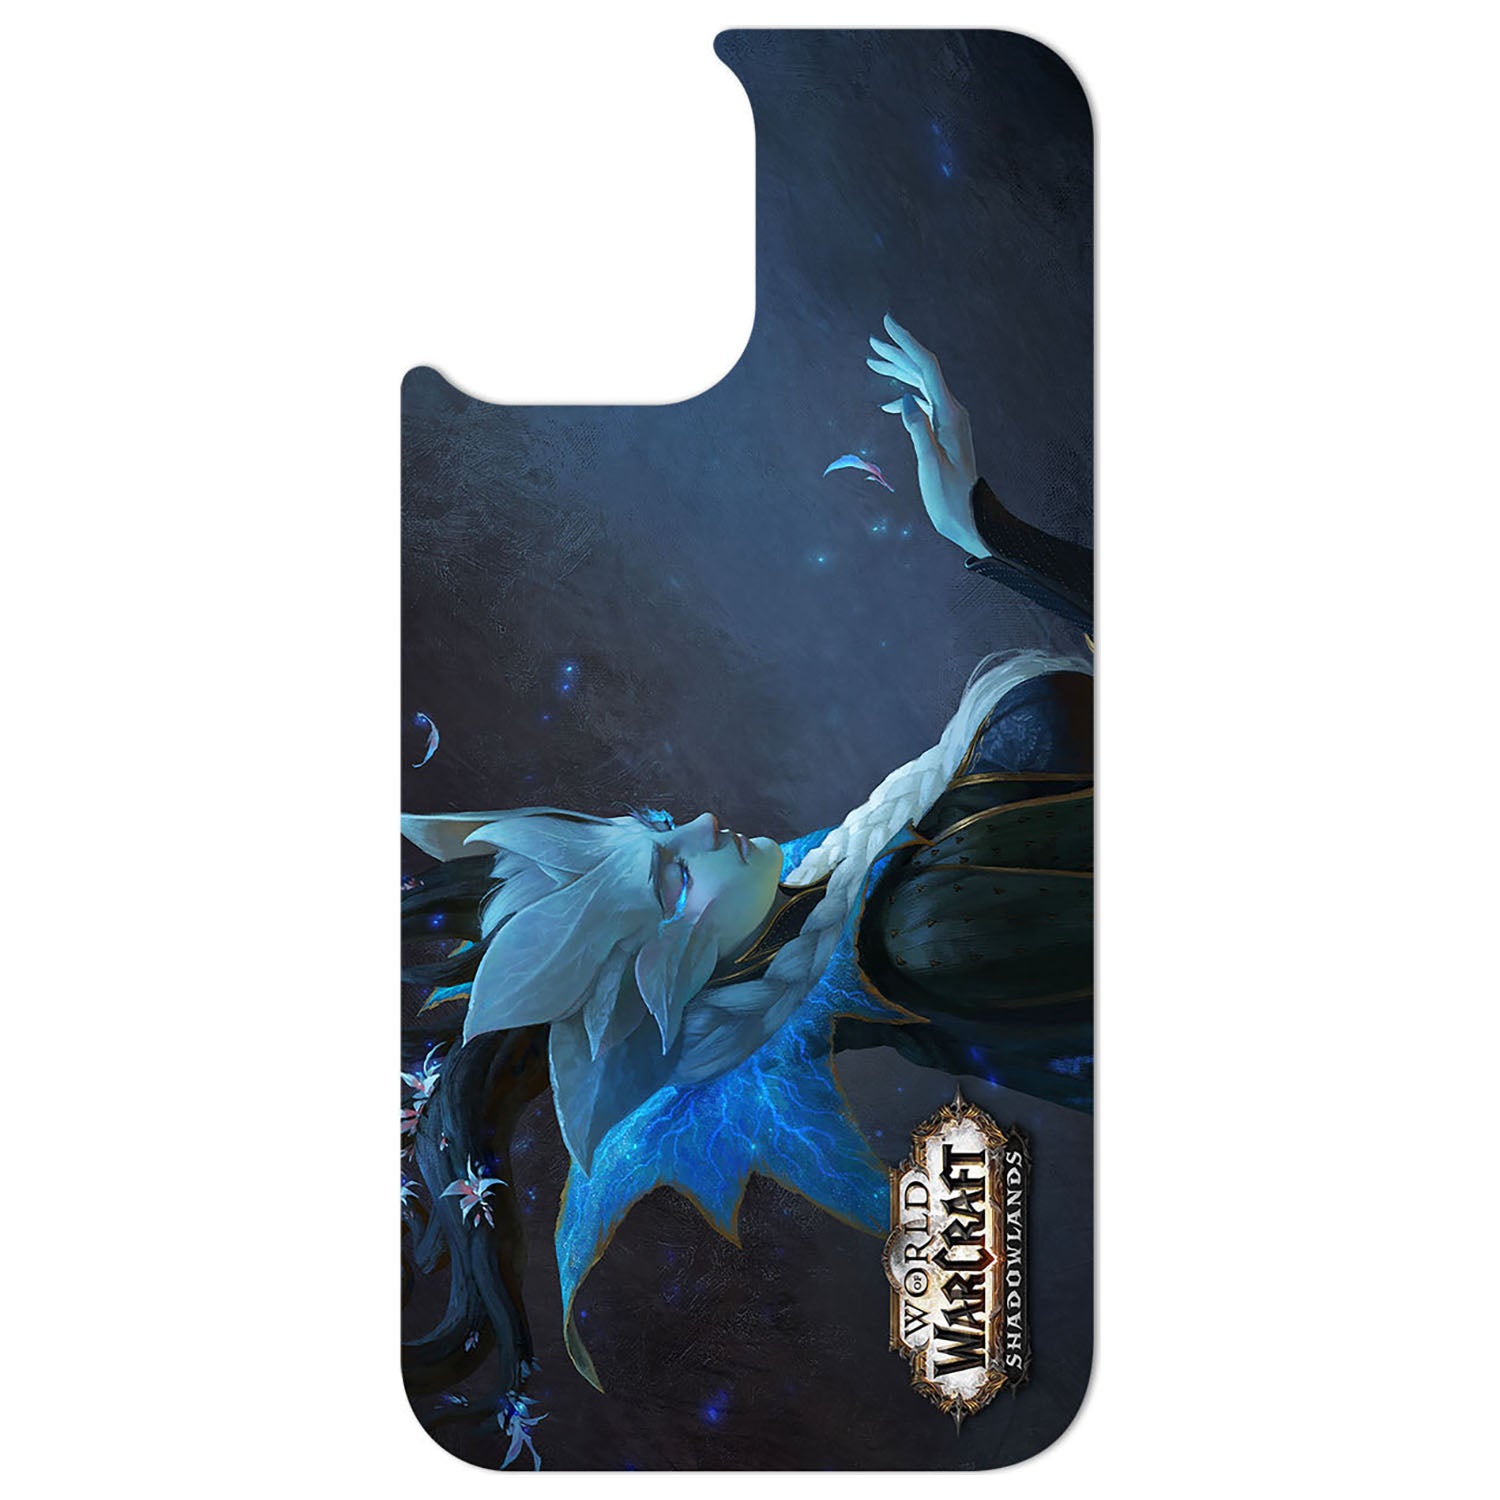 World of Warcraft Shadowlands InfiniteSwap Phone Pack - Winter Queen Swap